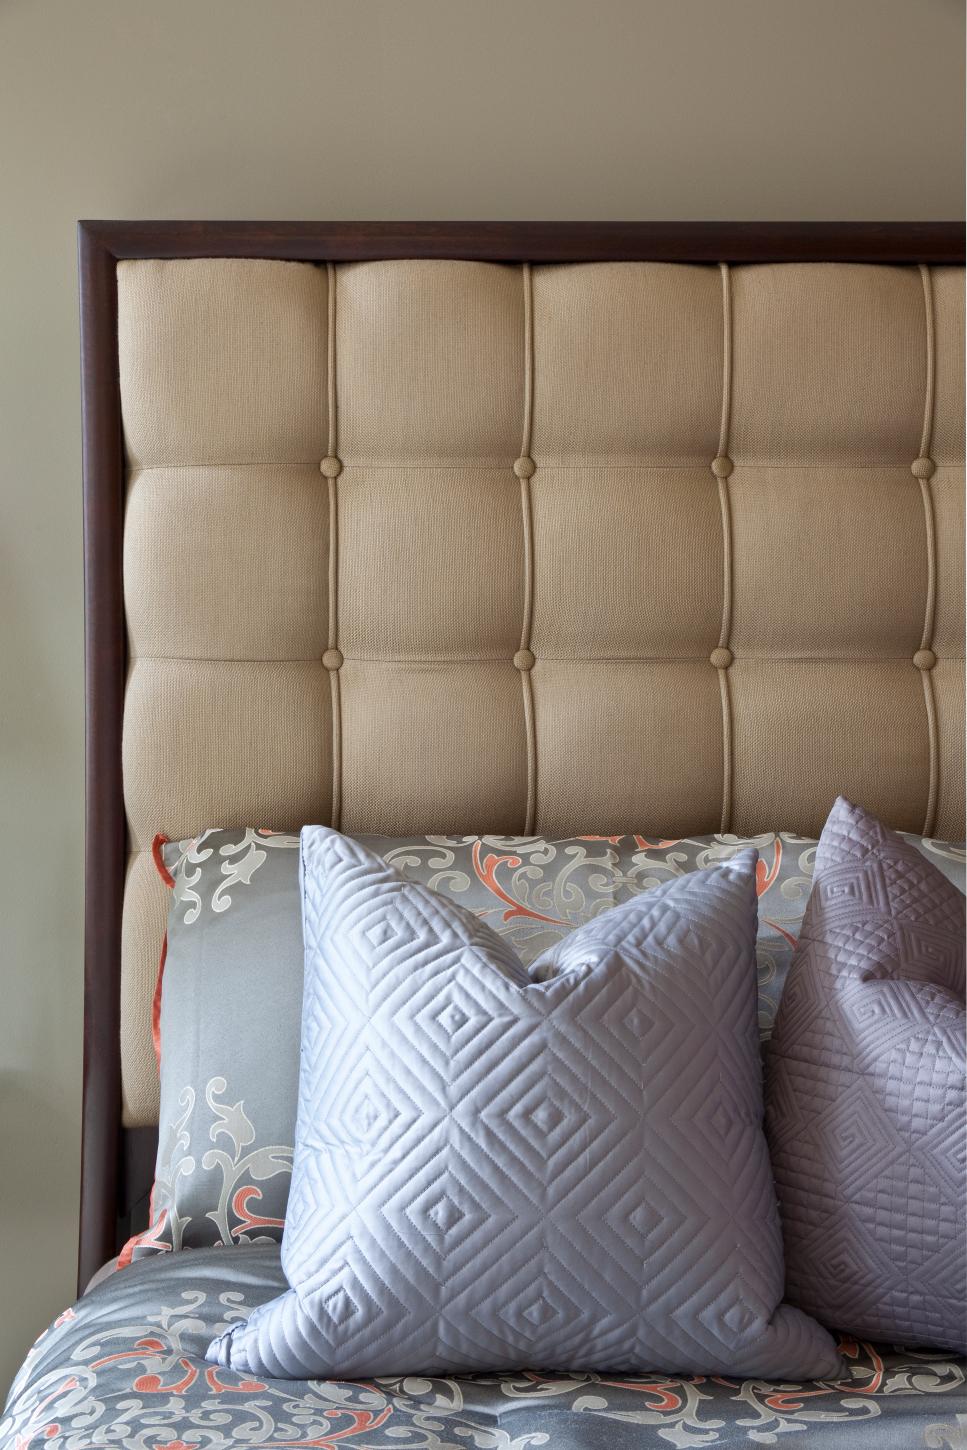  Upholstered Headboard Design Ideas for Living room